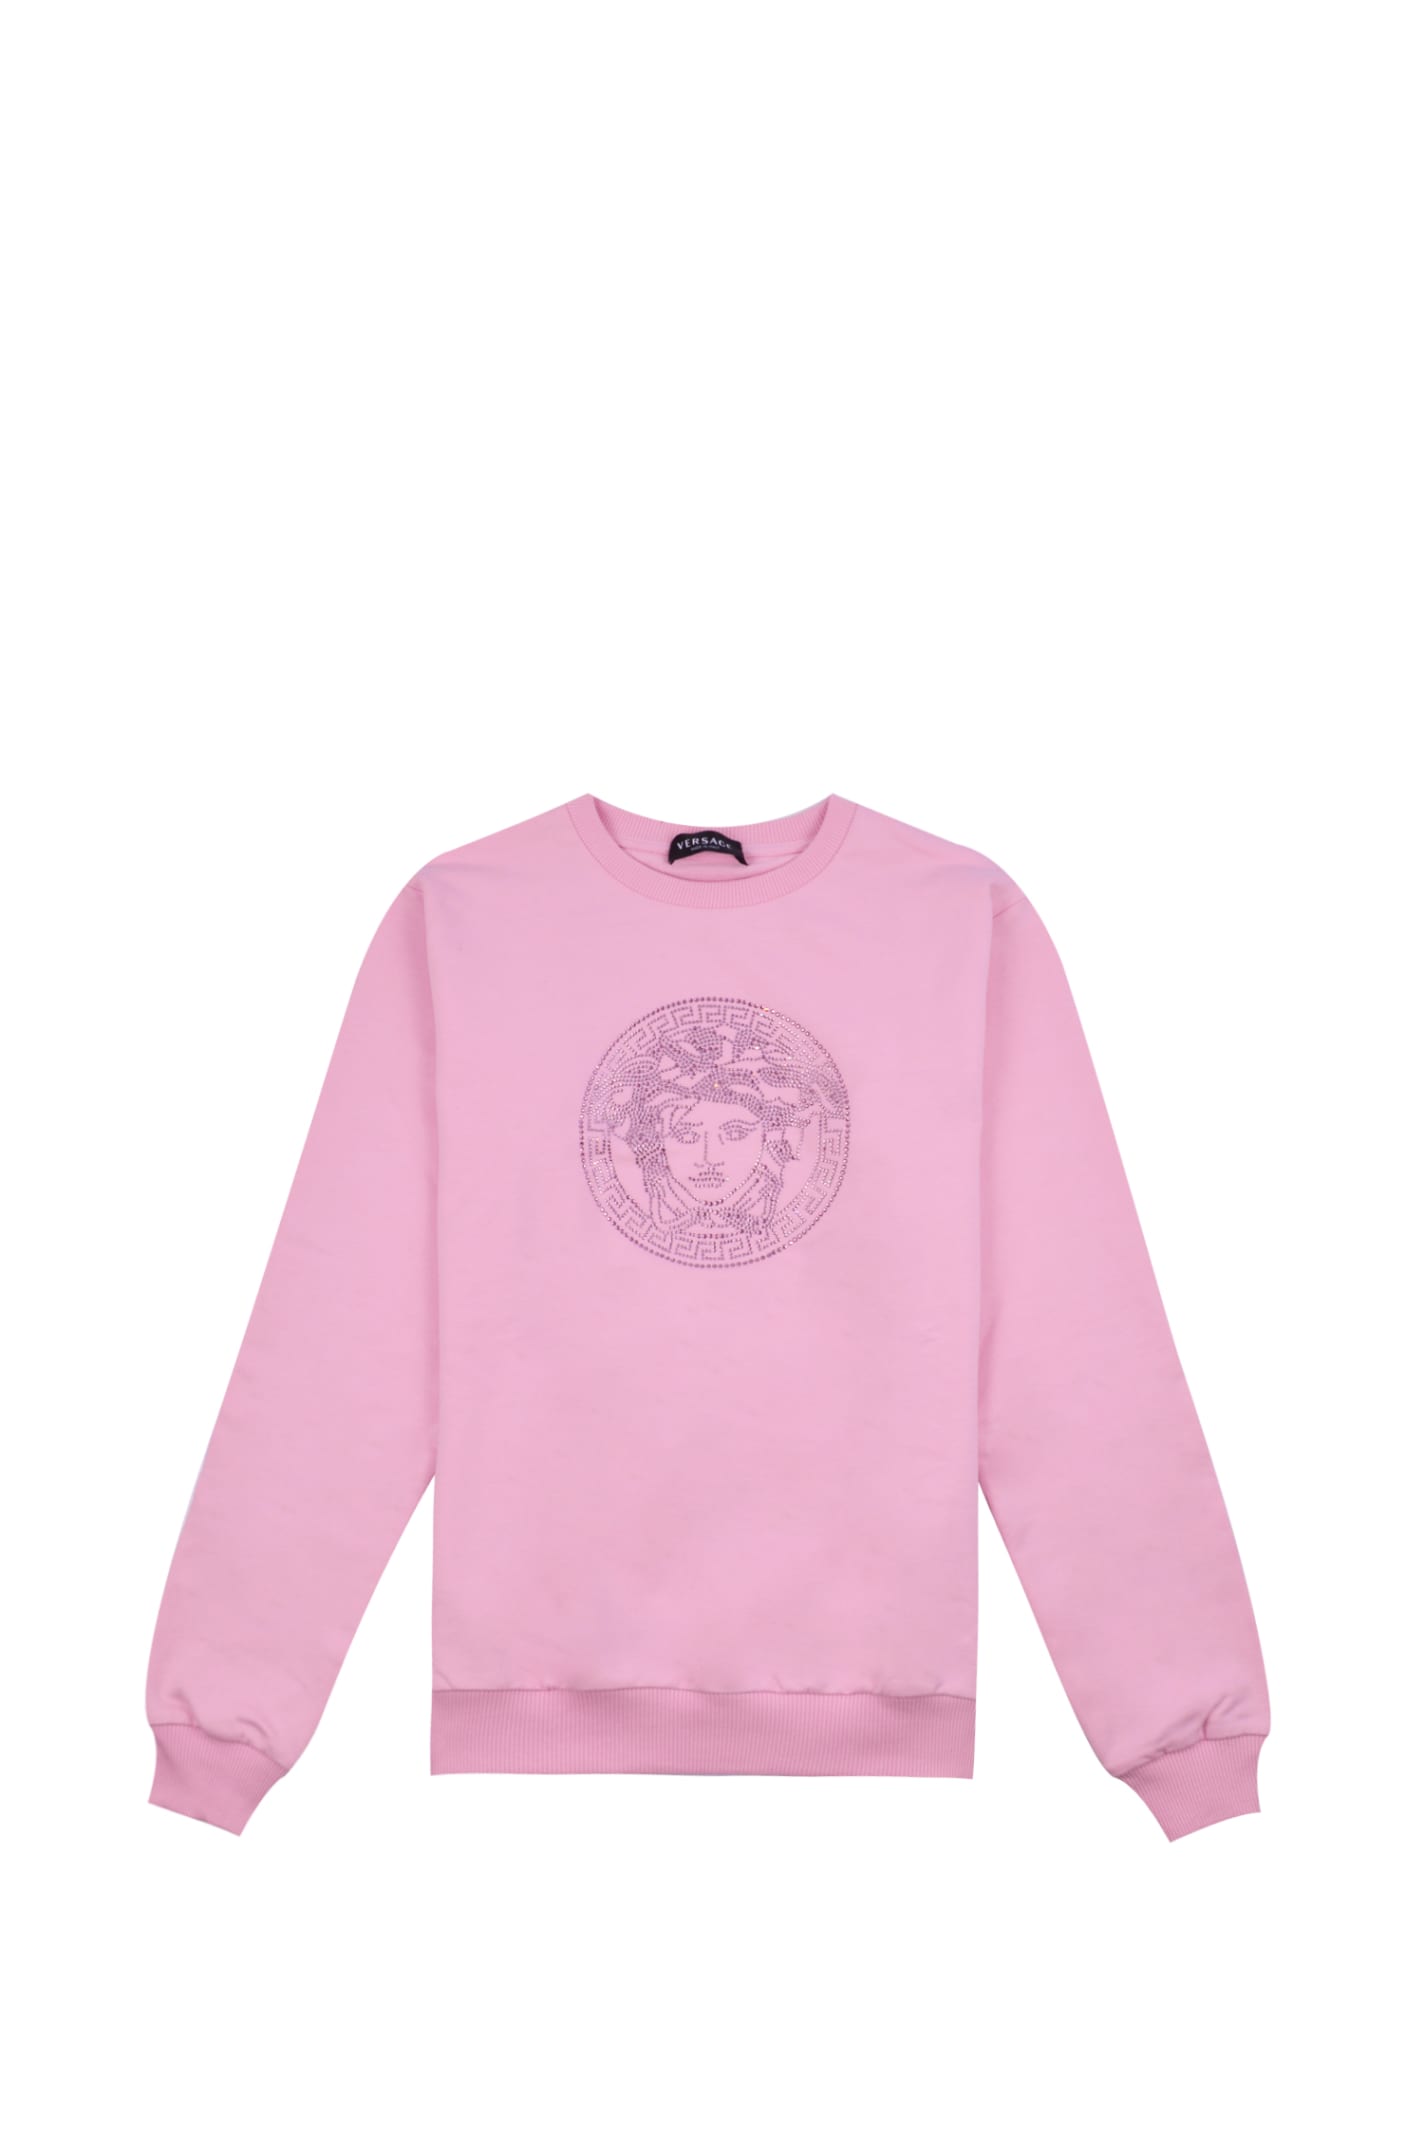 Versace Sweatshirt With Medusa Motif